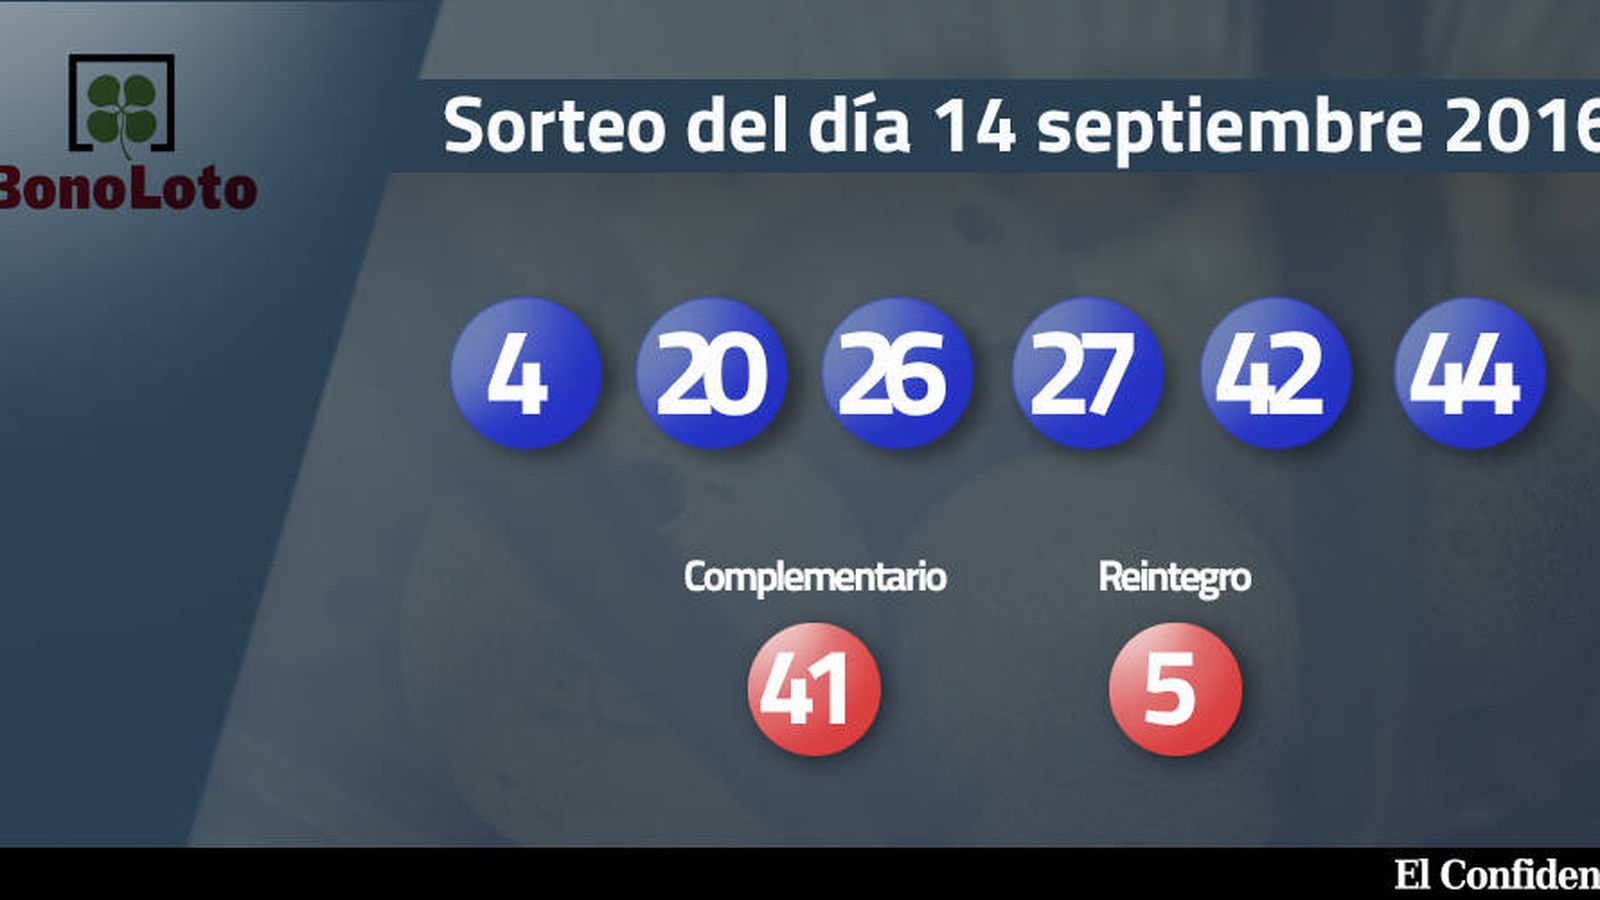 Foto: Resultados del sorteo de la Bonoloto del 14 septiembre 2016 (EC)